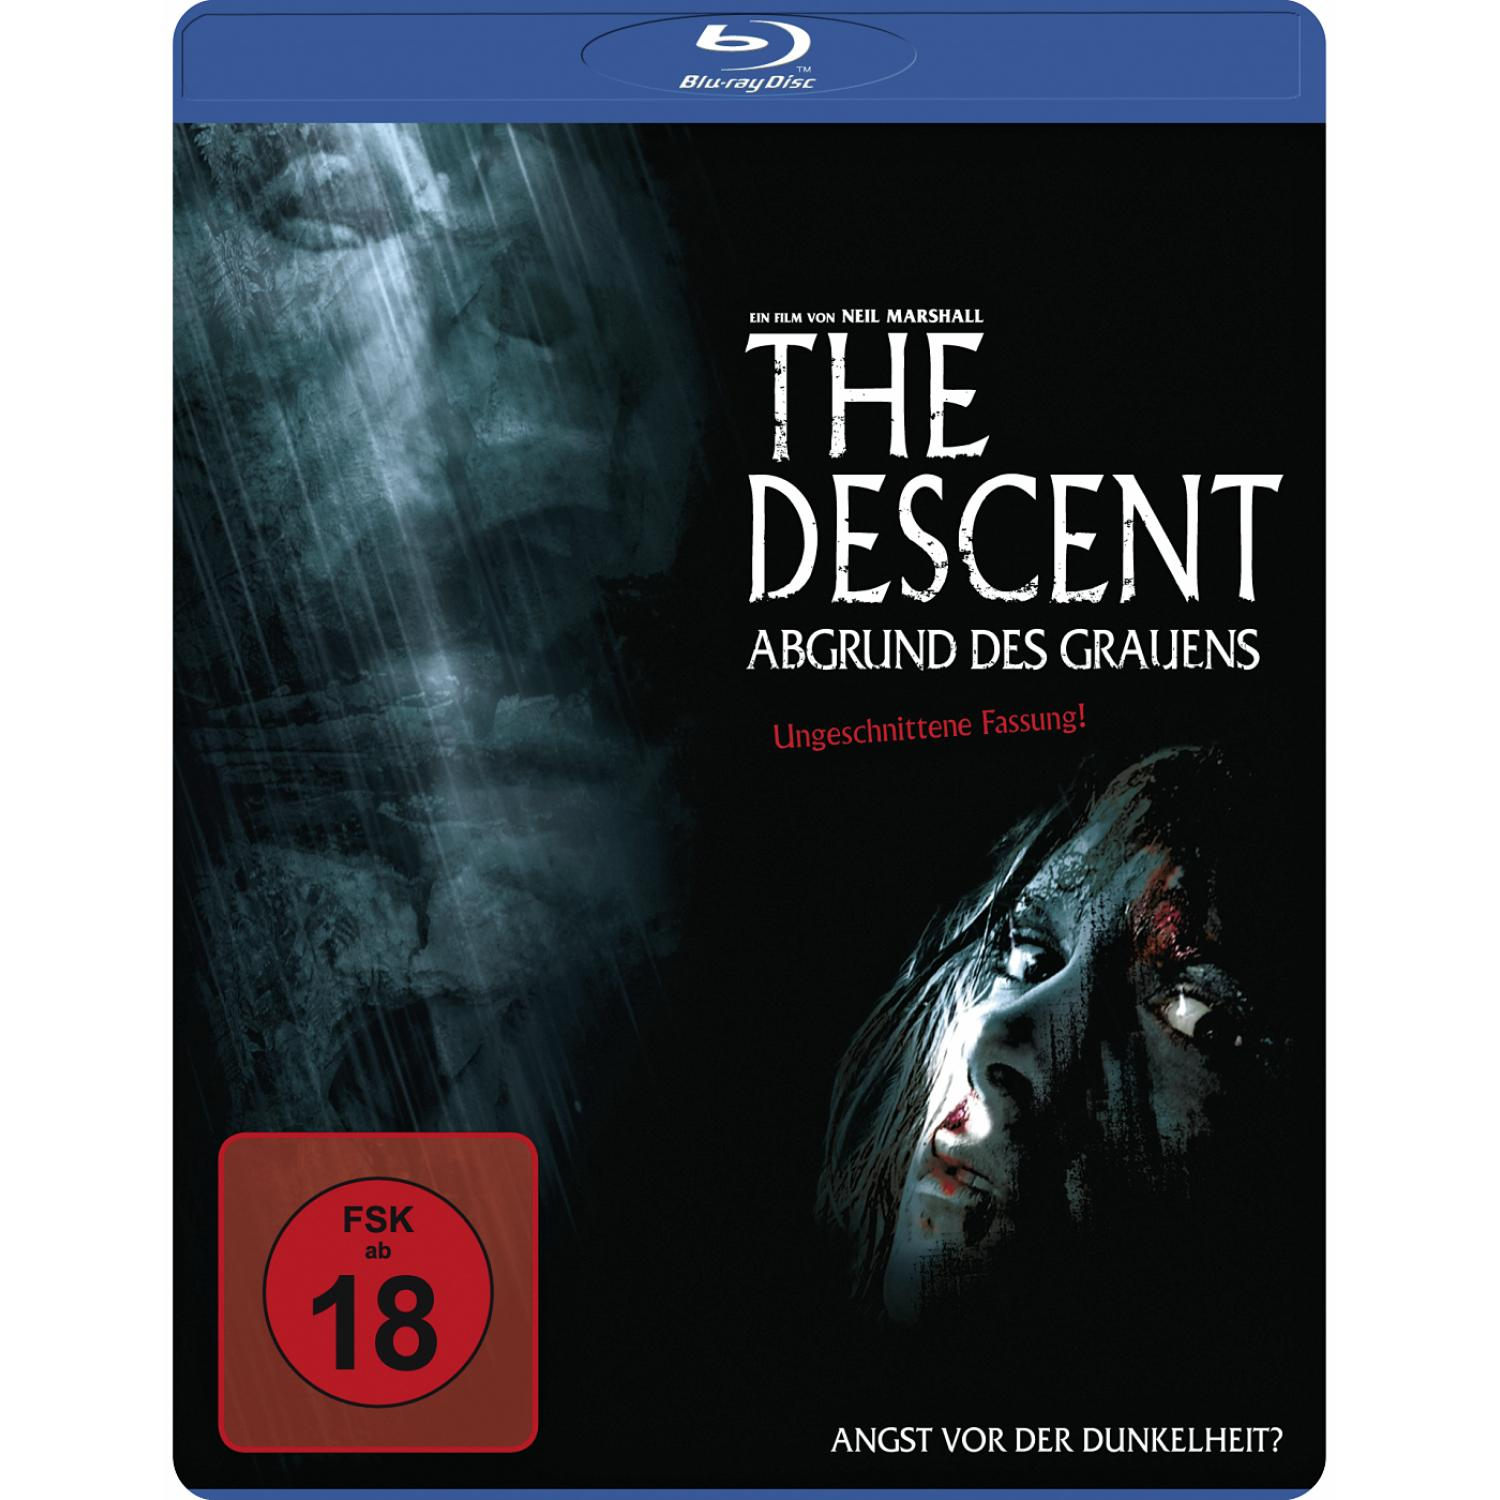 Descent des The Blu-ray - Grauens Abgrund